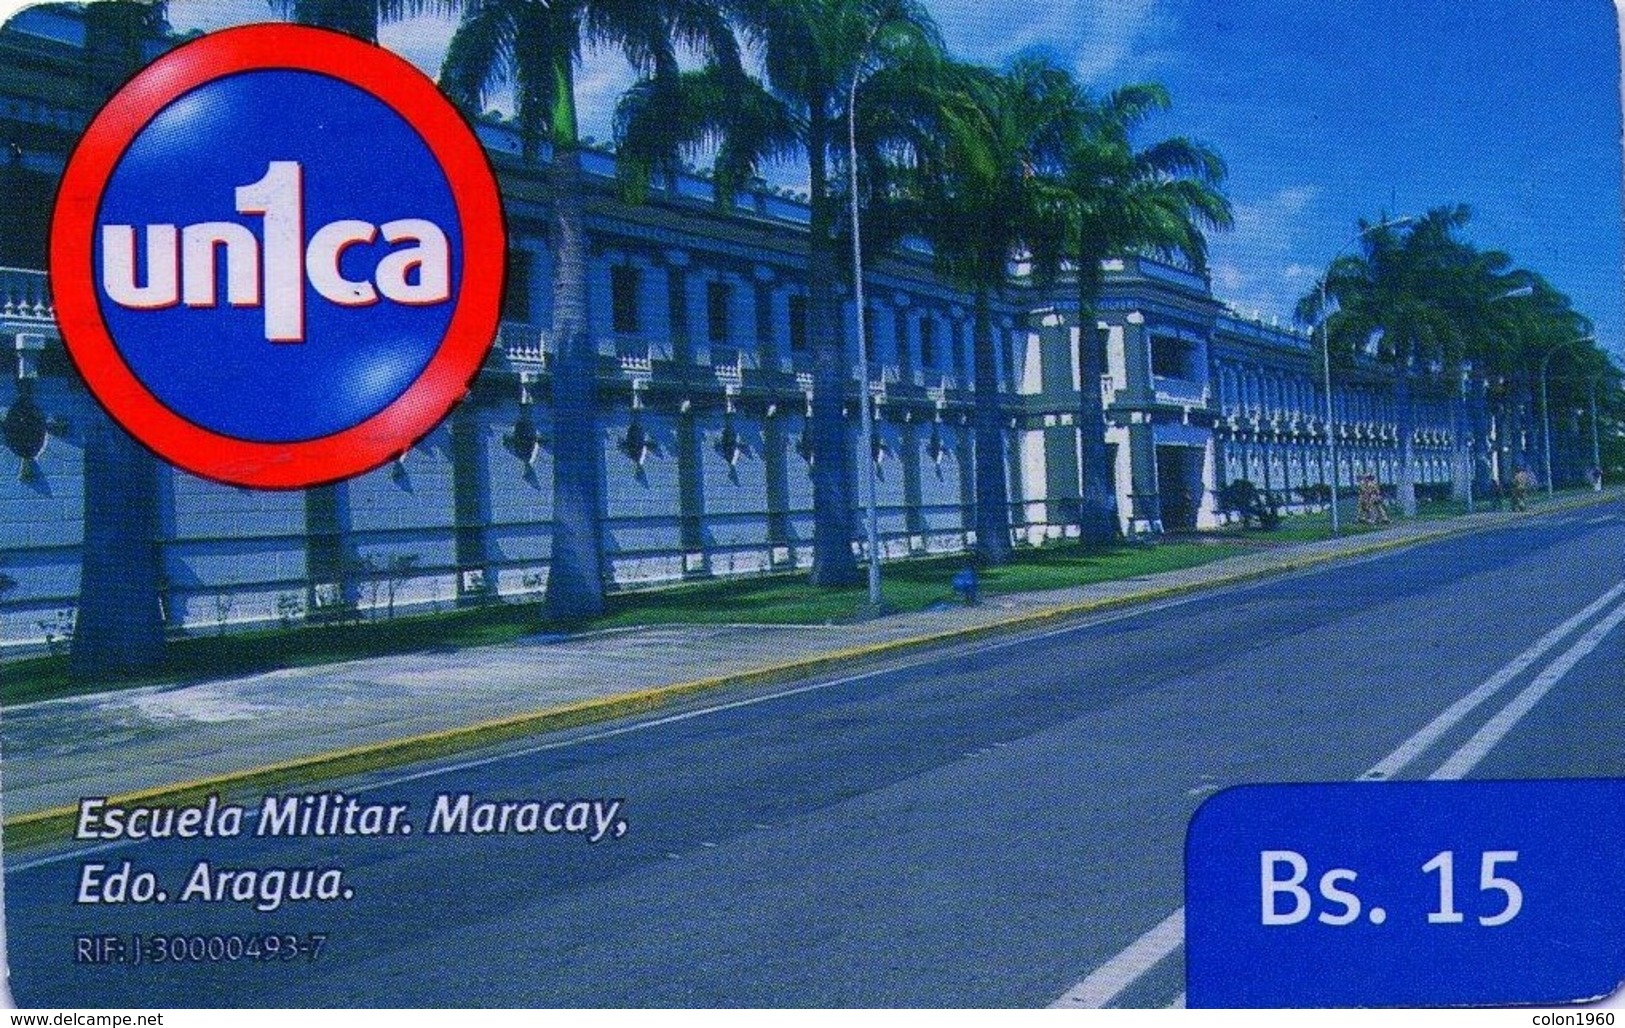 VENEZUELA, GSM-RECARGA. Escuela Militar, Maracay. Edo. Aragua. UI091121. VE-UNICA-U-091121. (280). - Esercito